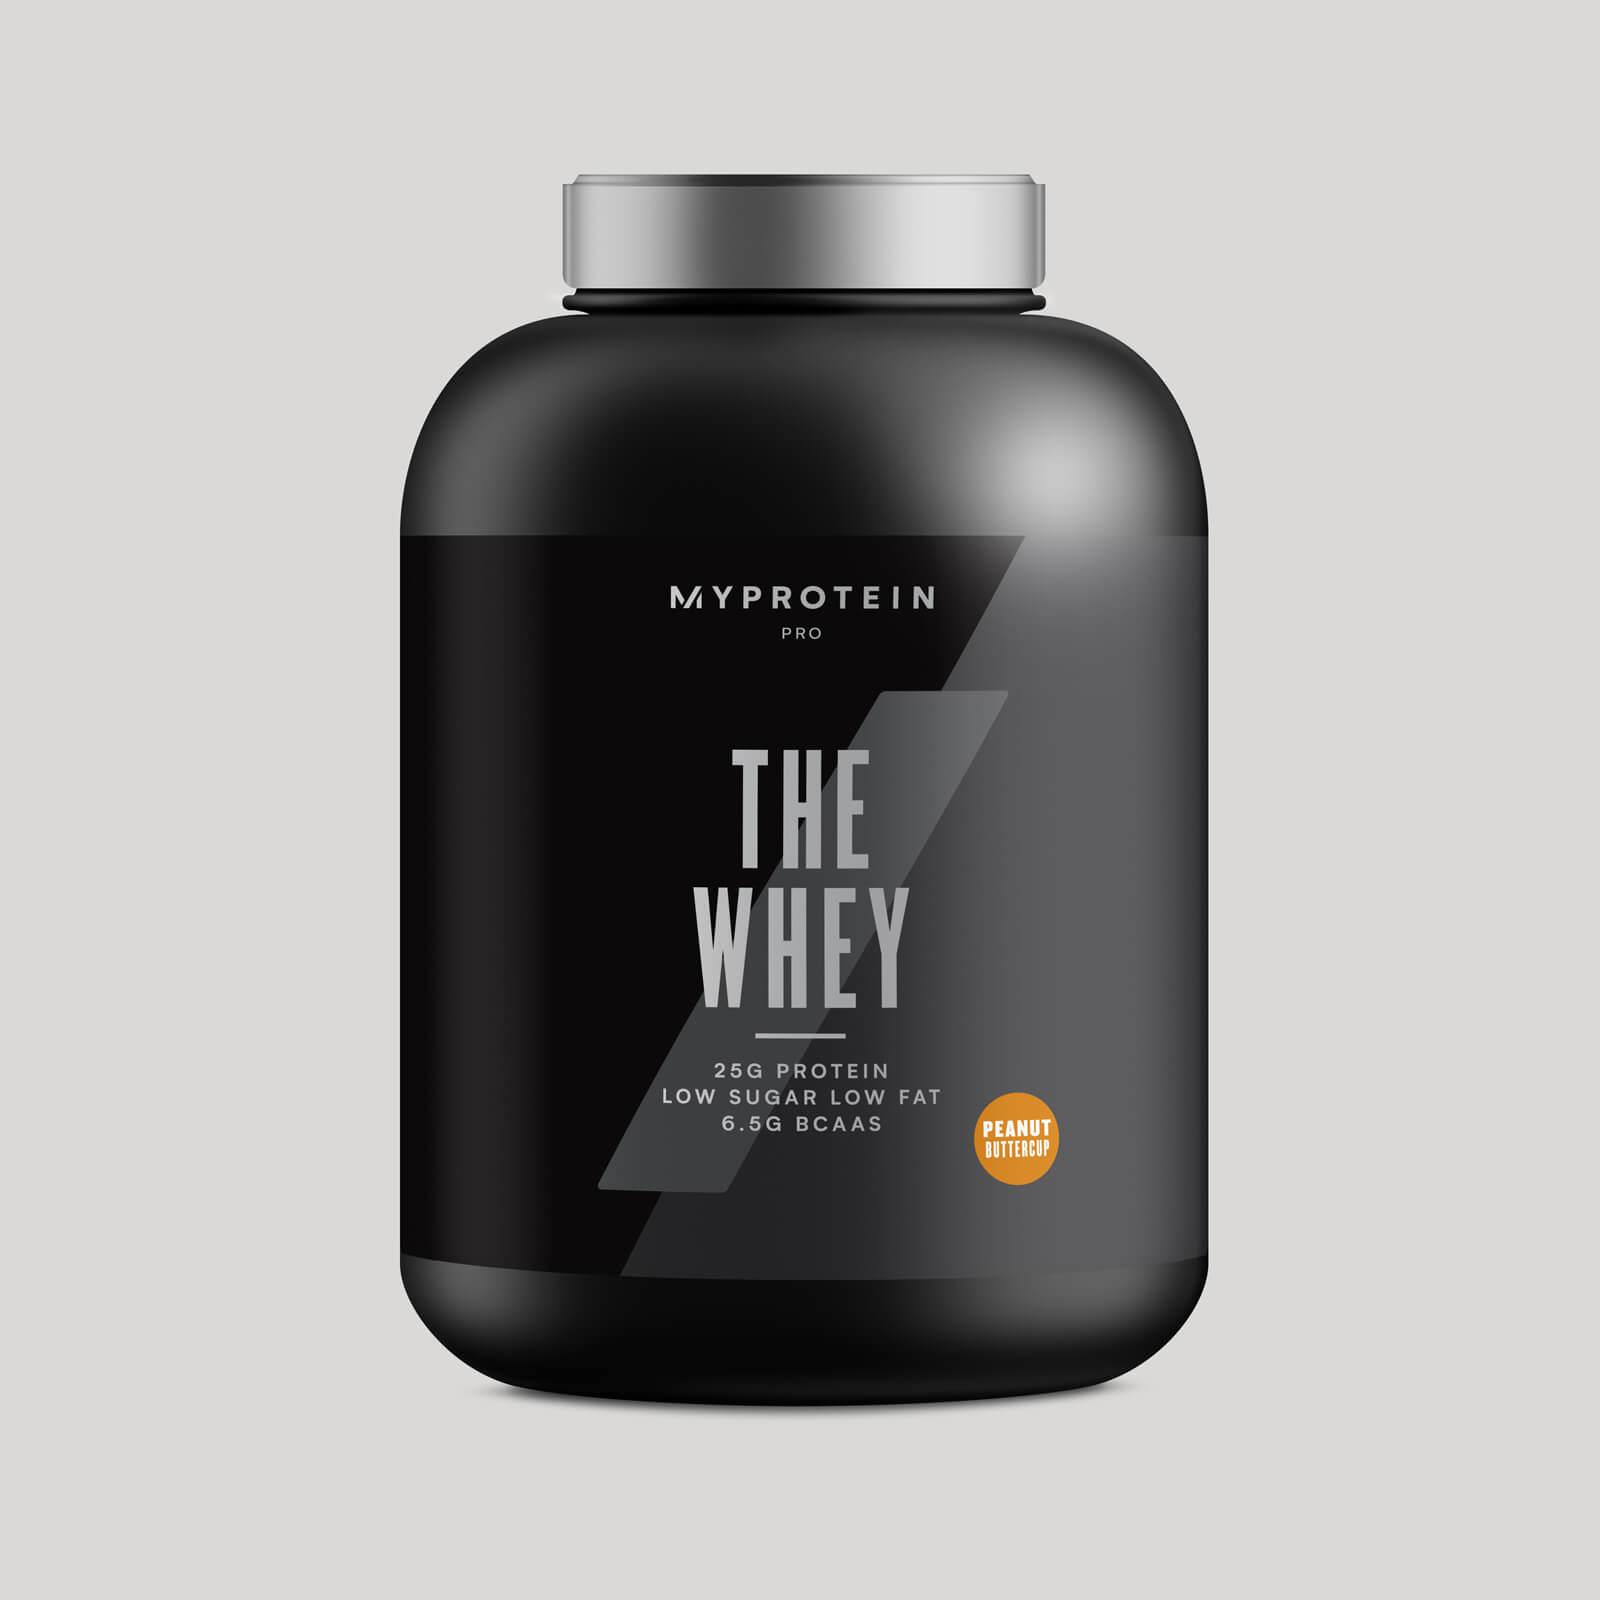 Myprotein THE Whey™ - 60 Servings - 1.86kg - Burro di arachidi